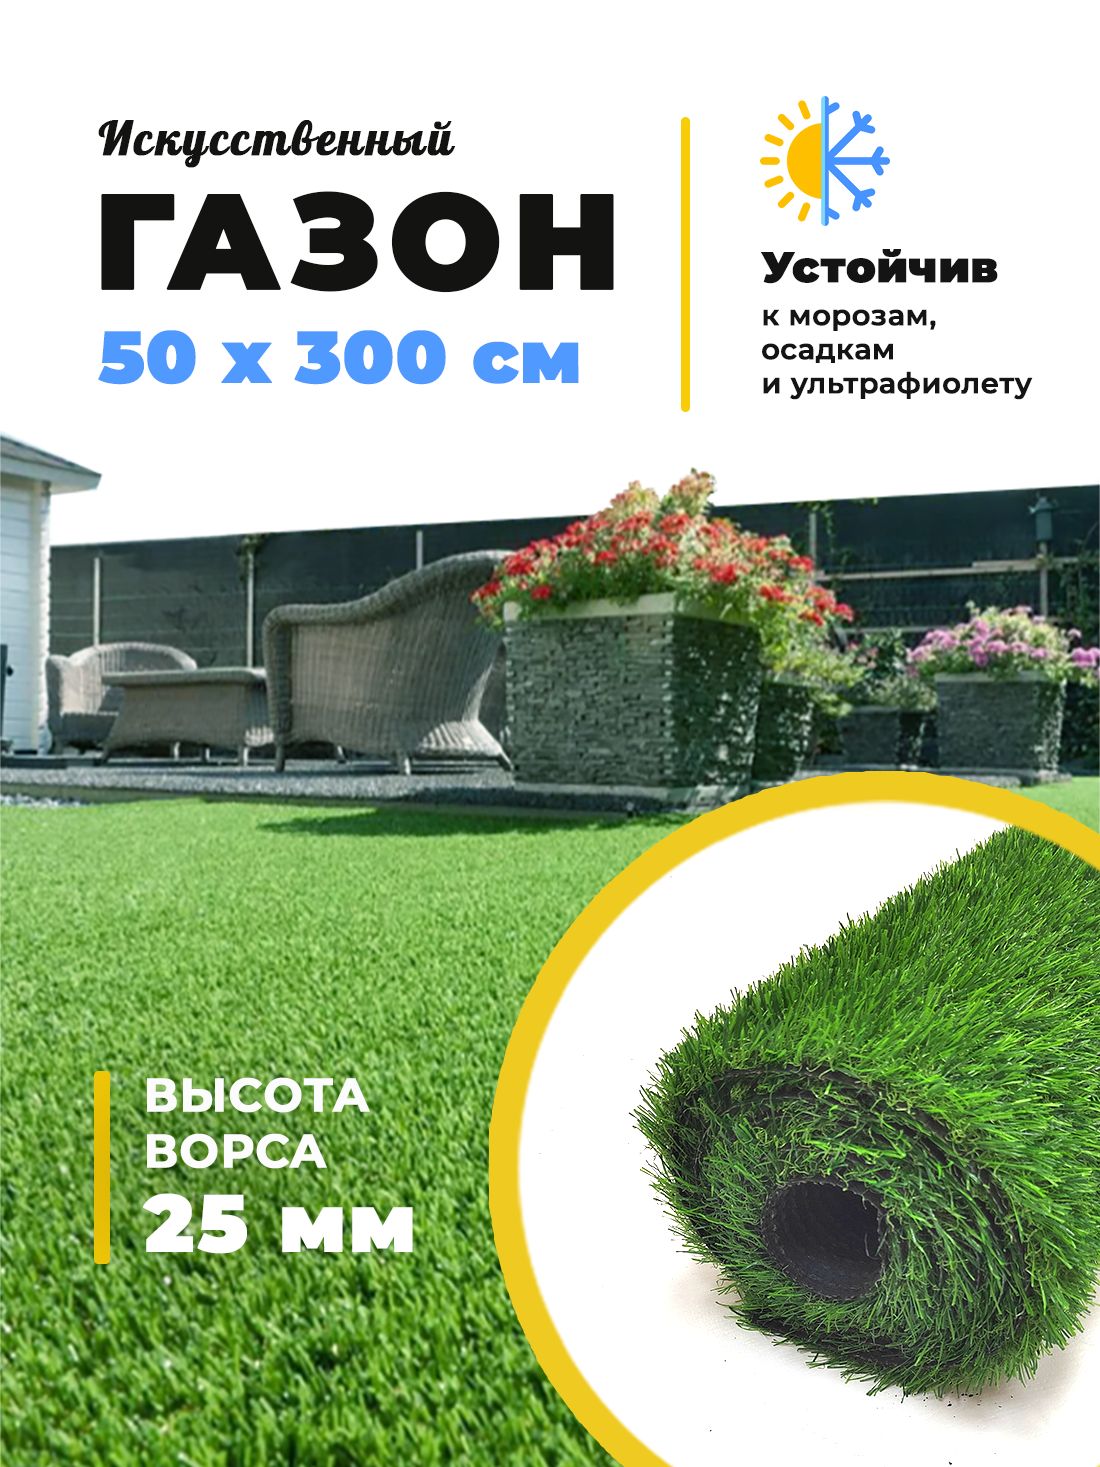 Искусственный газон трава Купипол BM-1 2513 25 мм 50 х 300 см